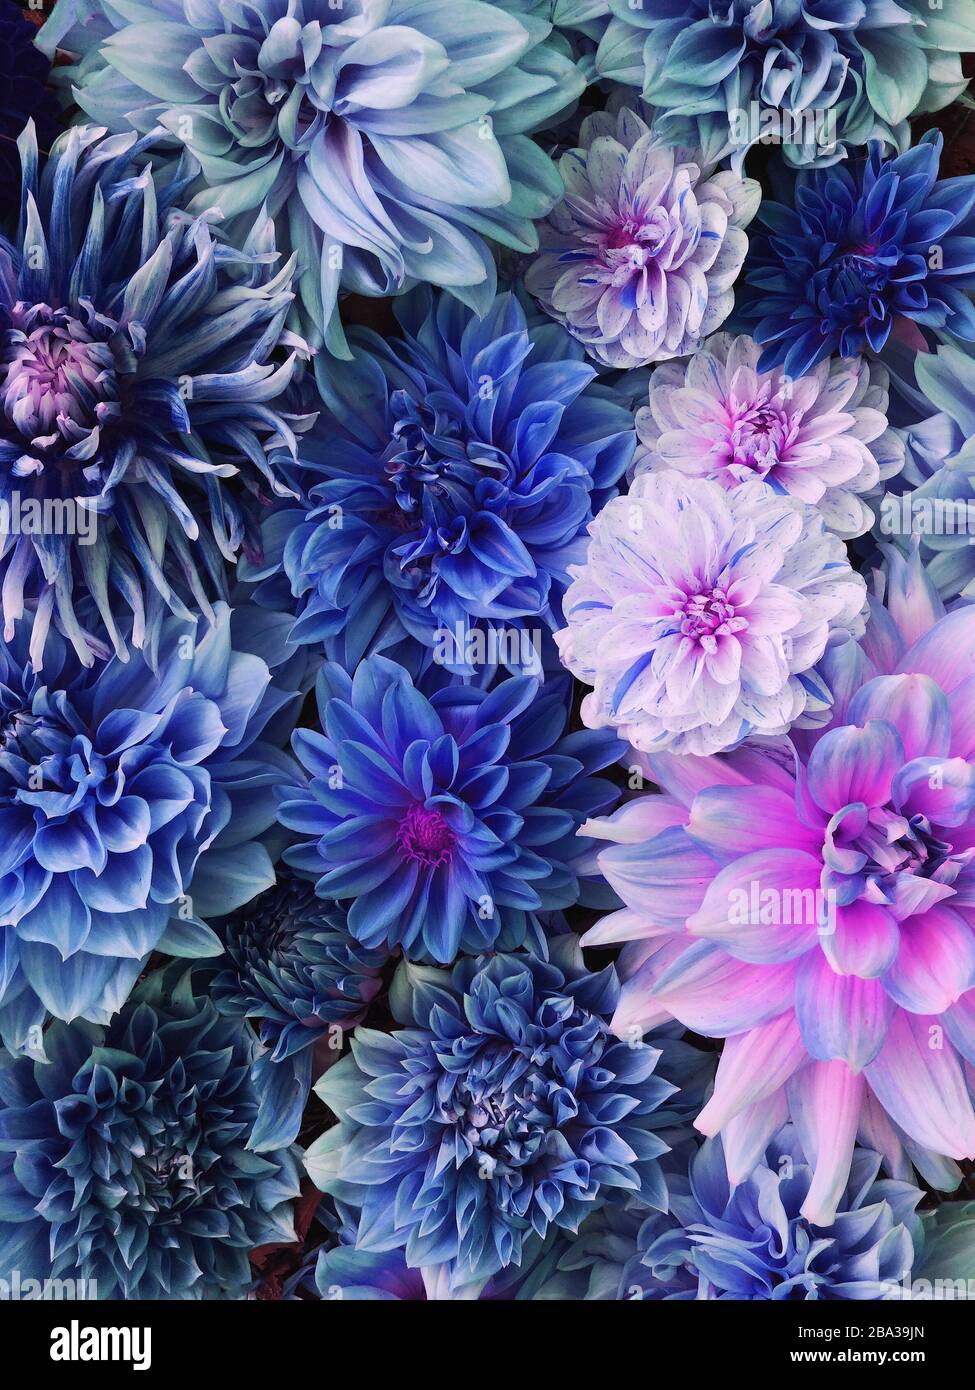 Bunte blaue, weiße und violette Dahlienblüten in voller Blüte. Stockfoto